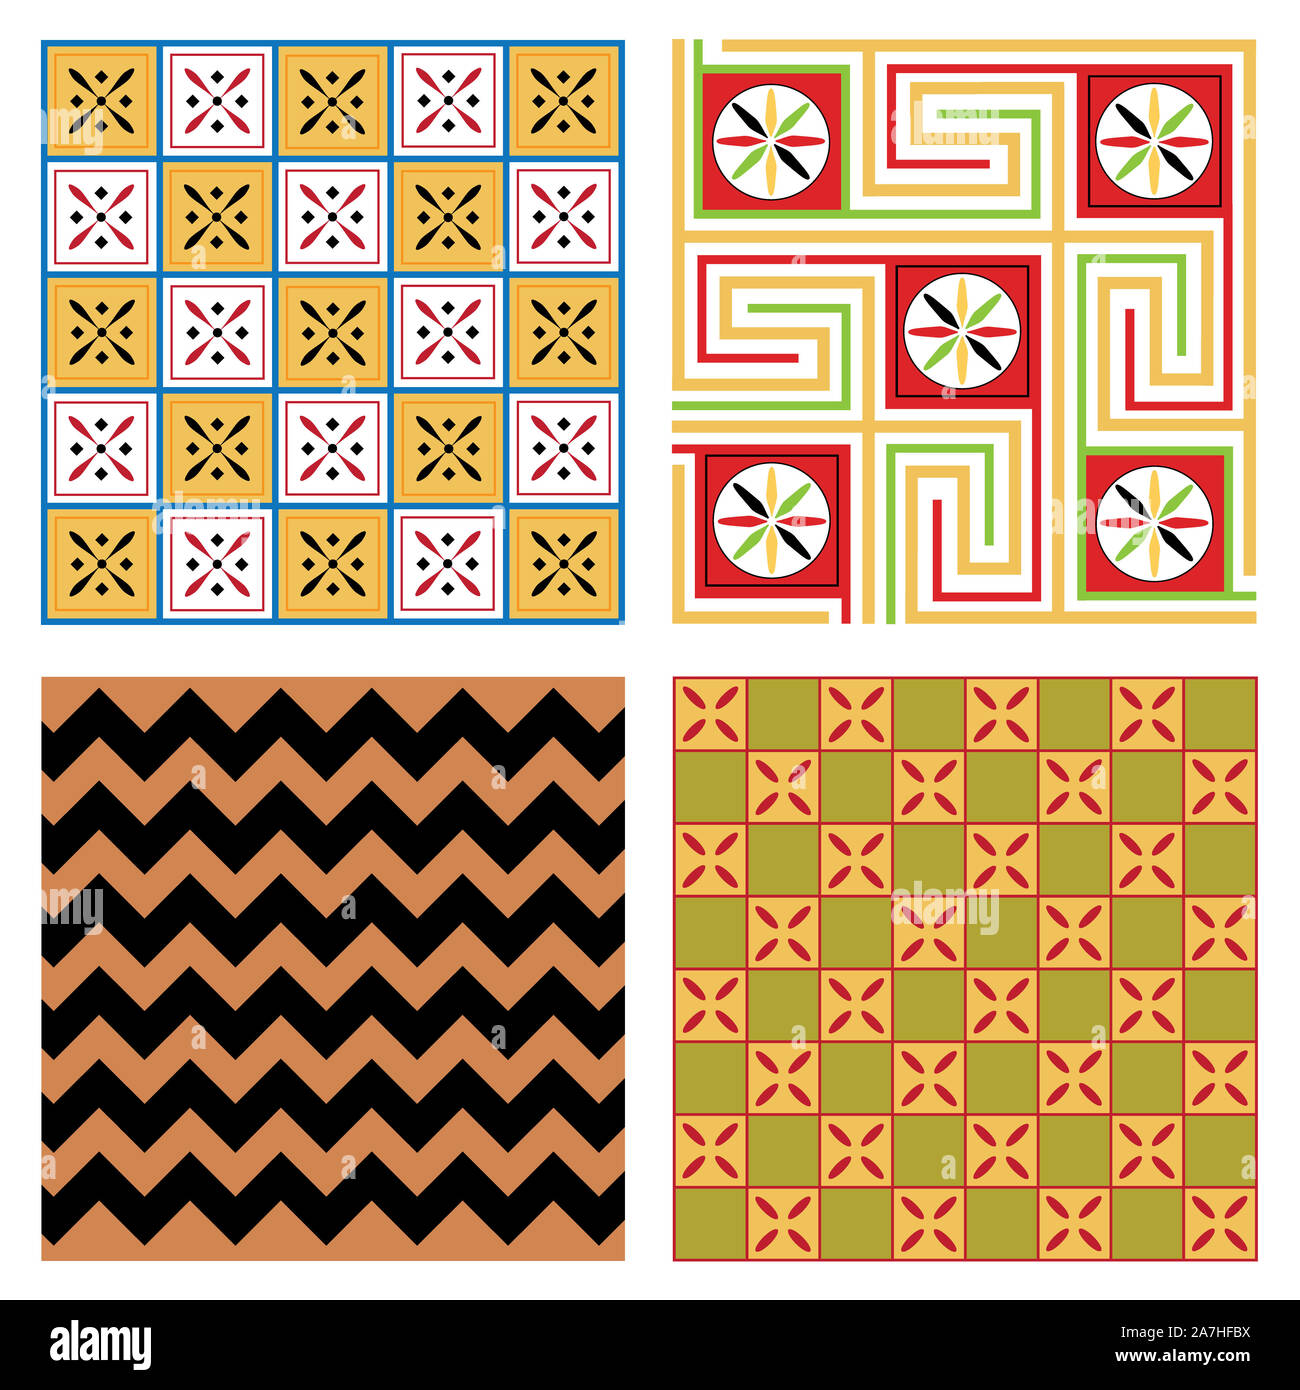 Ägypten nationalen Ornament pattern Volume 4. Ägyptische dekorative textile Elemente Hintergrund. Die afrikanische Kultur Stoff Design. Stockfoto